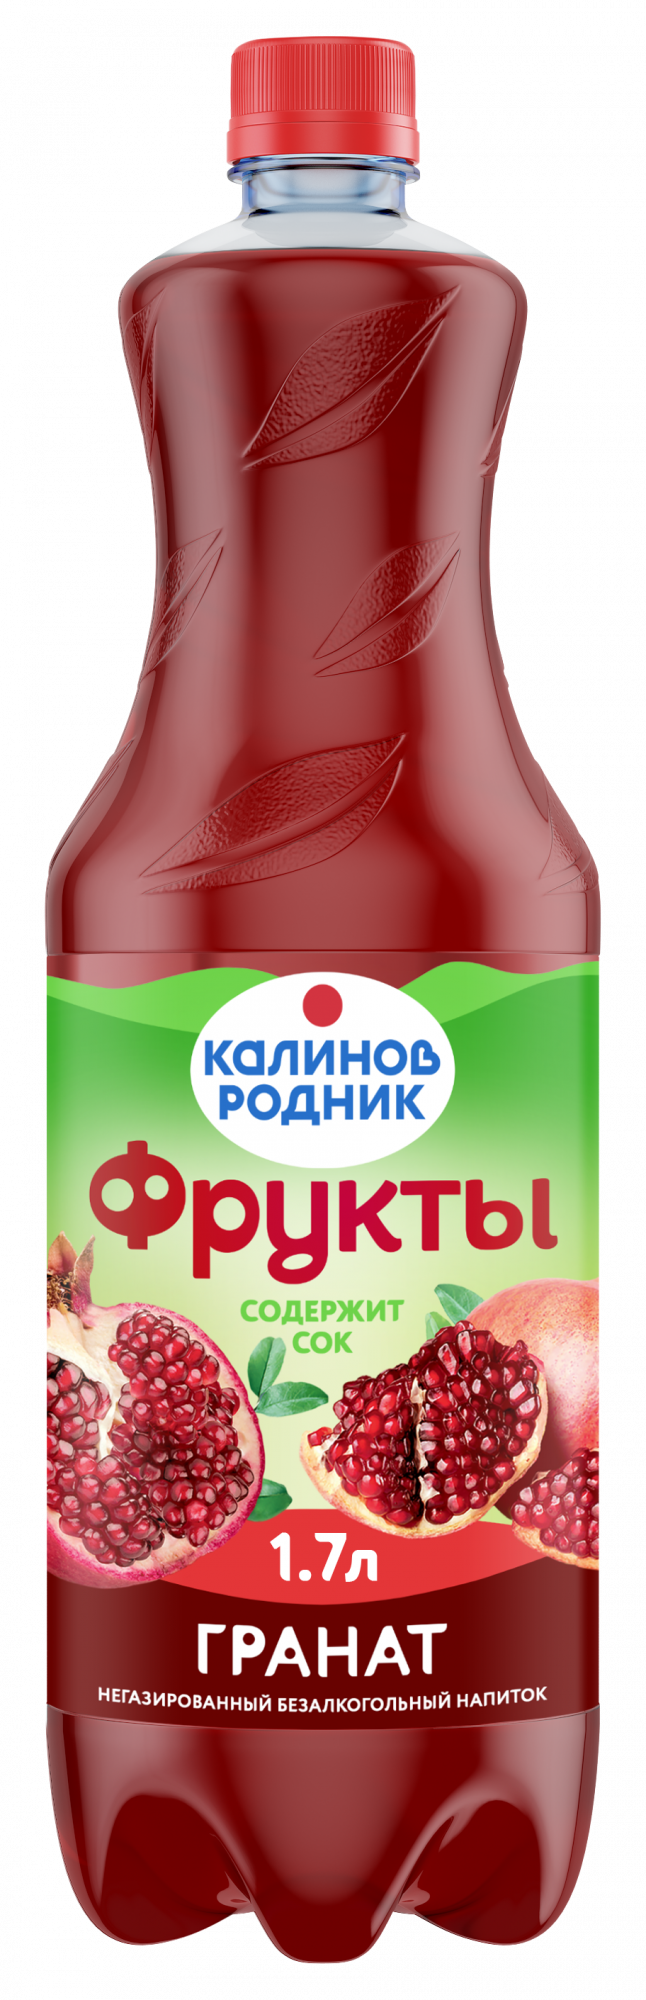 Напиток Калинов с соком граната н газ бут 1.7 л - интернет-магазин Близнецы